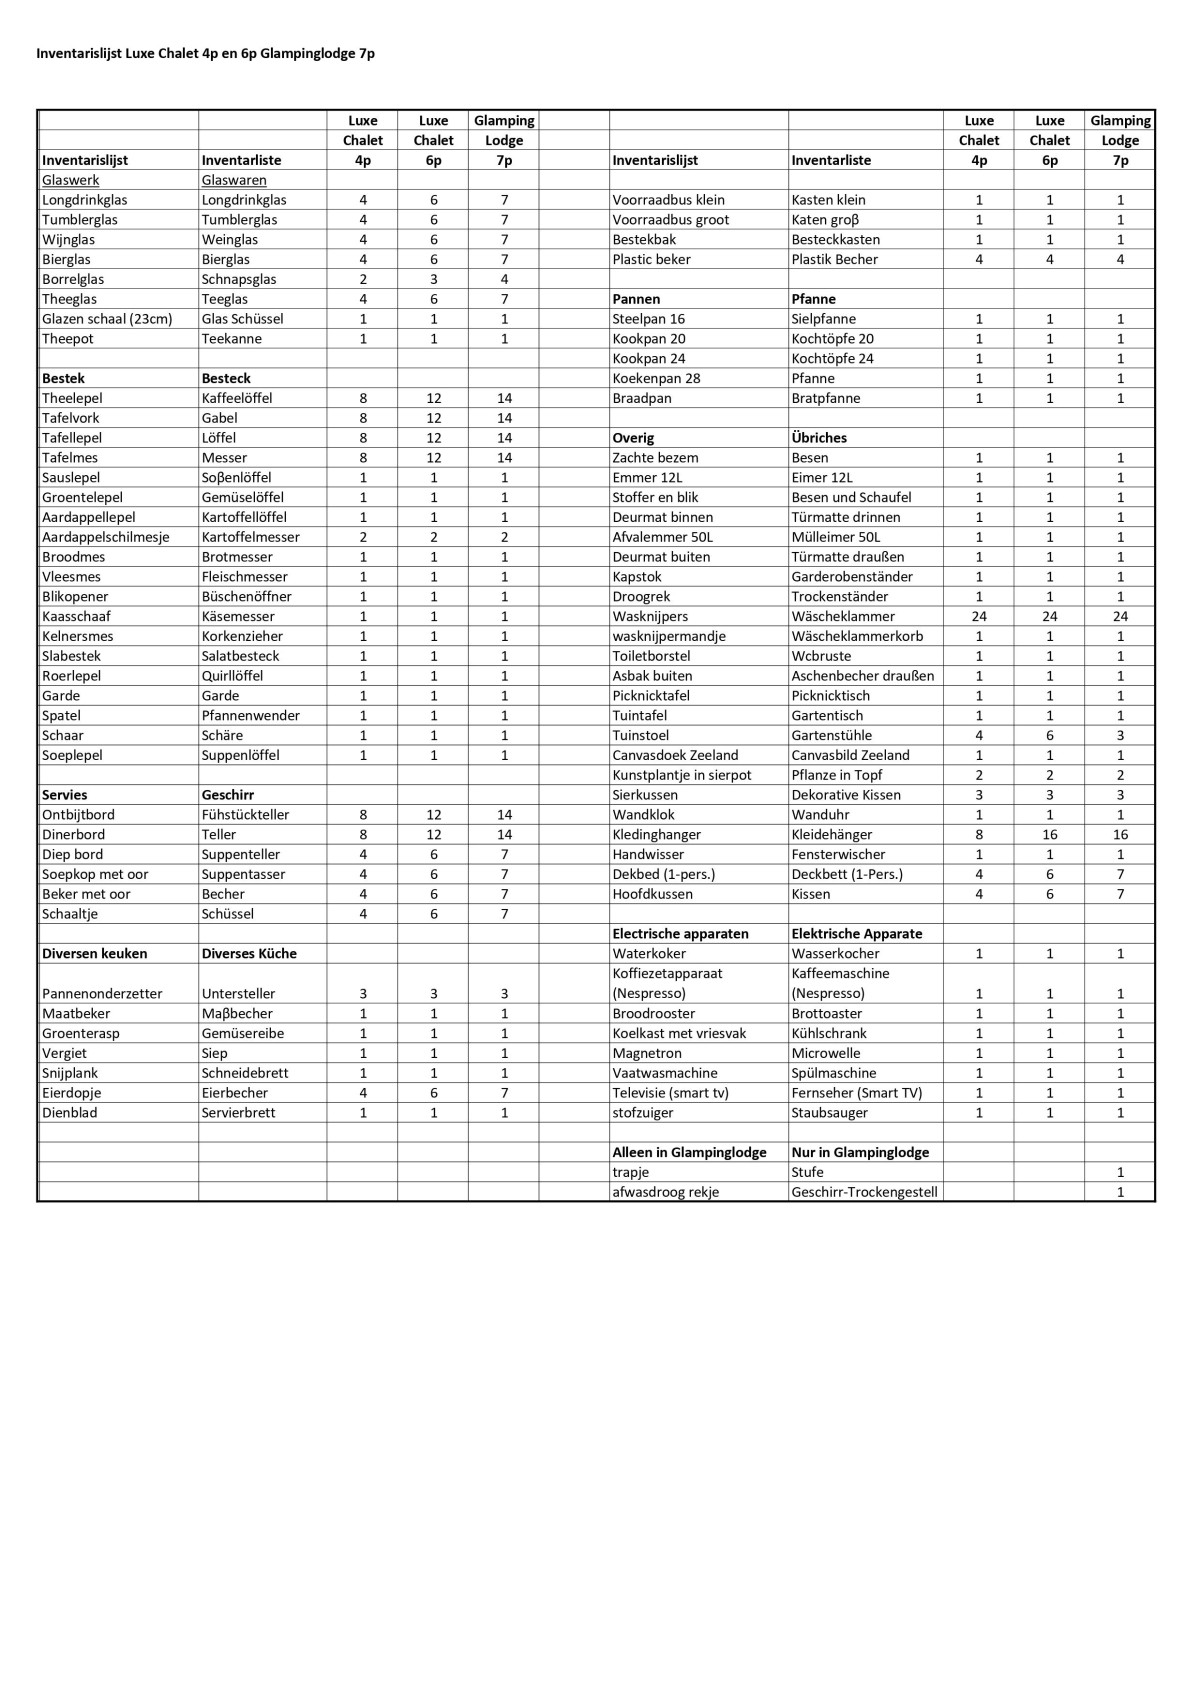 inventarislijst Chalets en Glampinglodge  (2023)